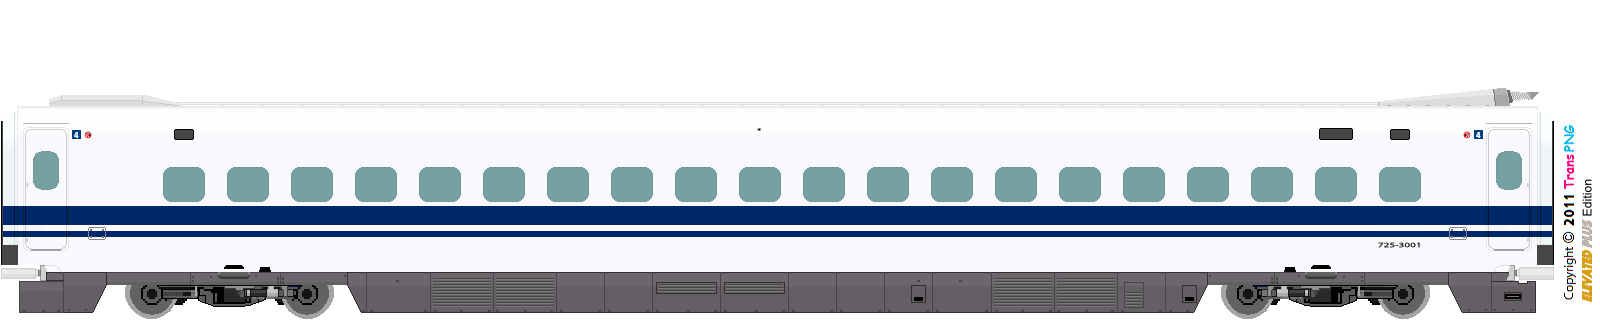 [9012] West Japan Railway 52287585753_fc48e4316a_o